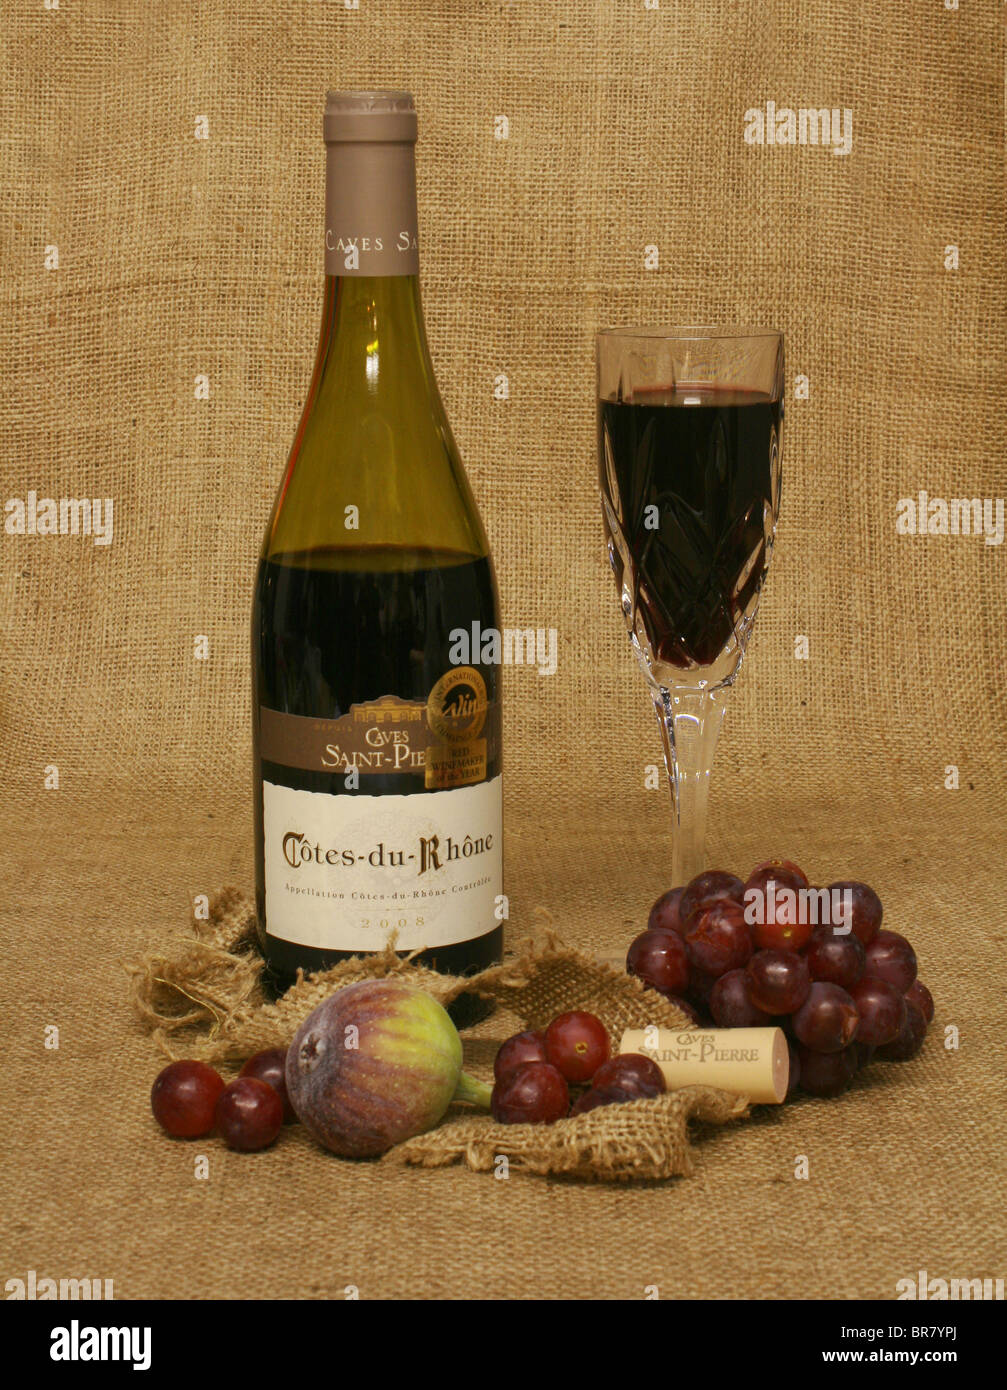 Bouteille de vin rouge et de vin dans un verre, avec des fruits sur un fond de toile. Banque D'Images